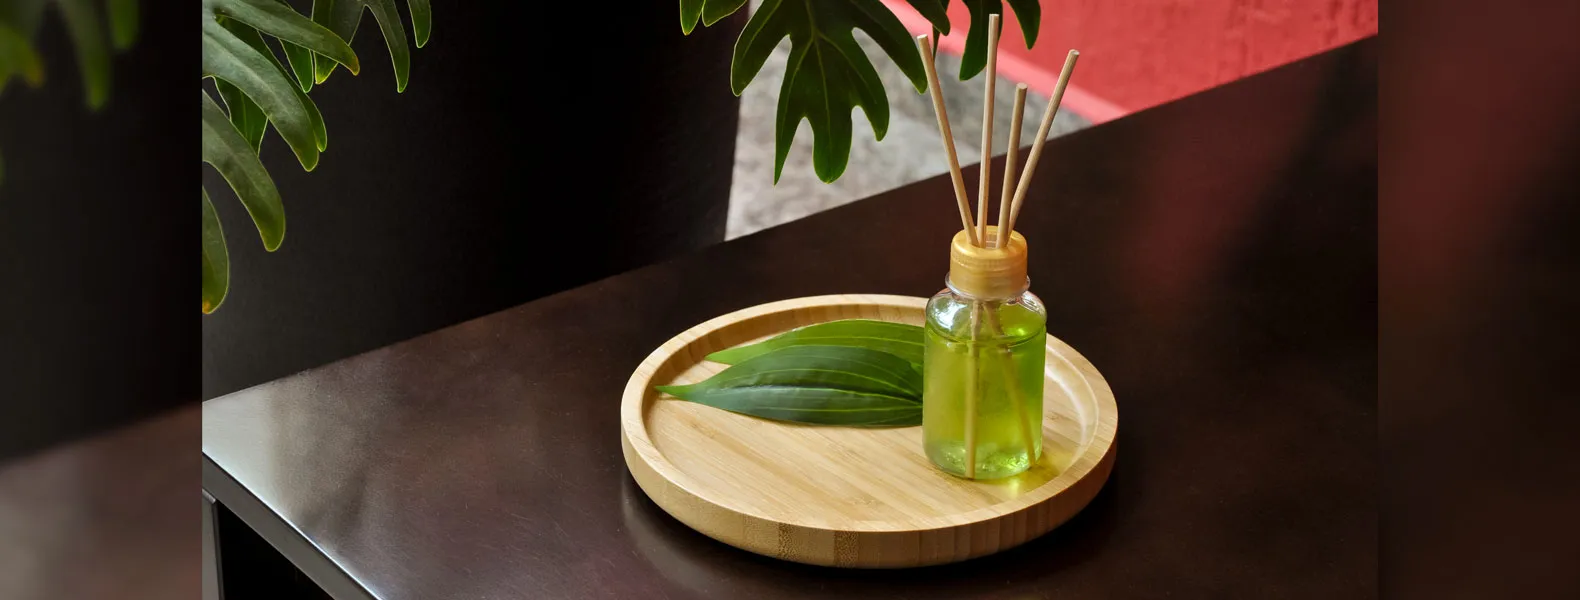 Kit para bandeja e aromatizador. Conta com bandeja redonda em bambu e aromatizador de ambiente com fragrância de bambu.